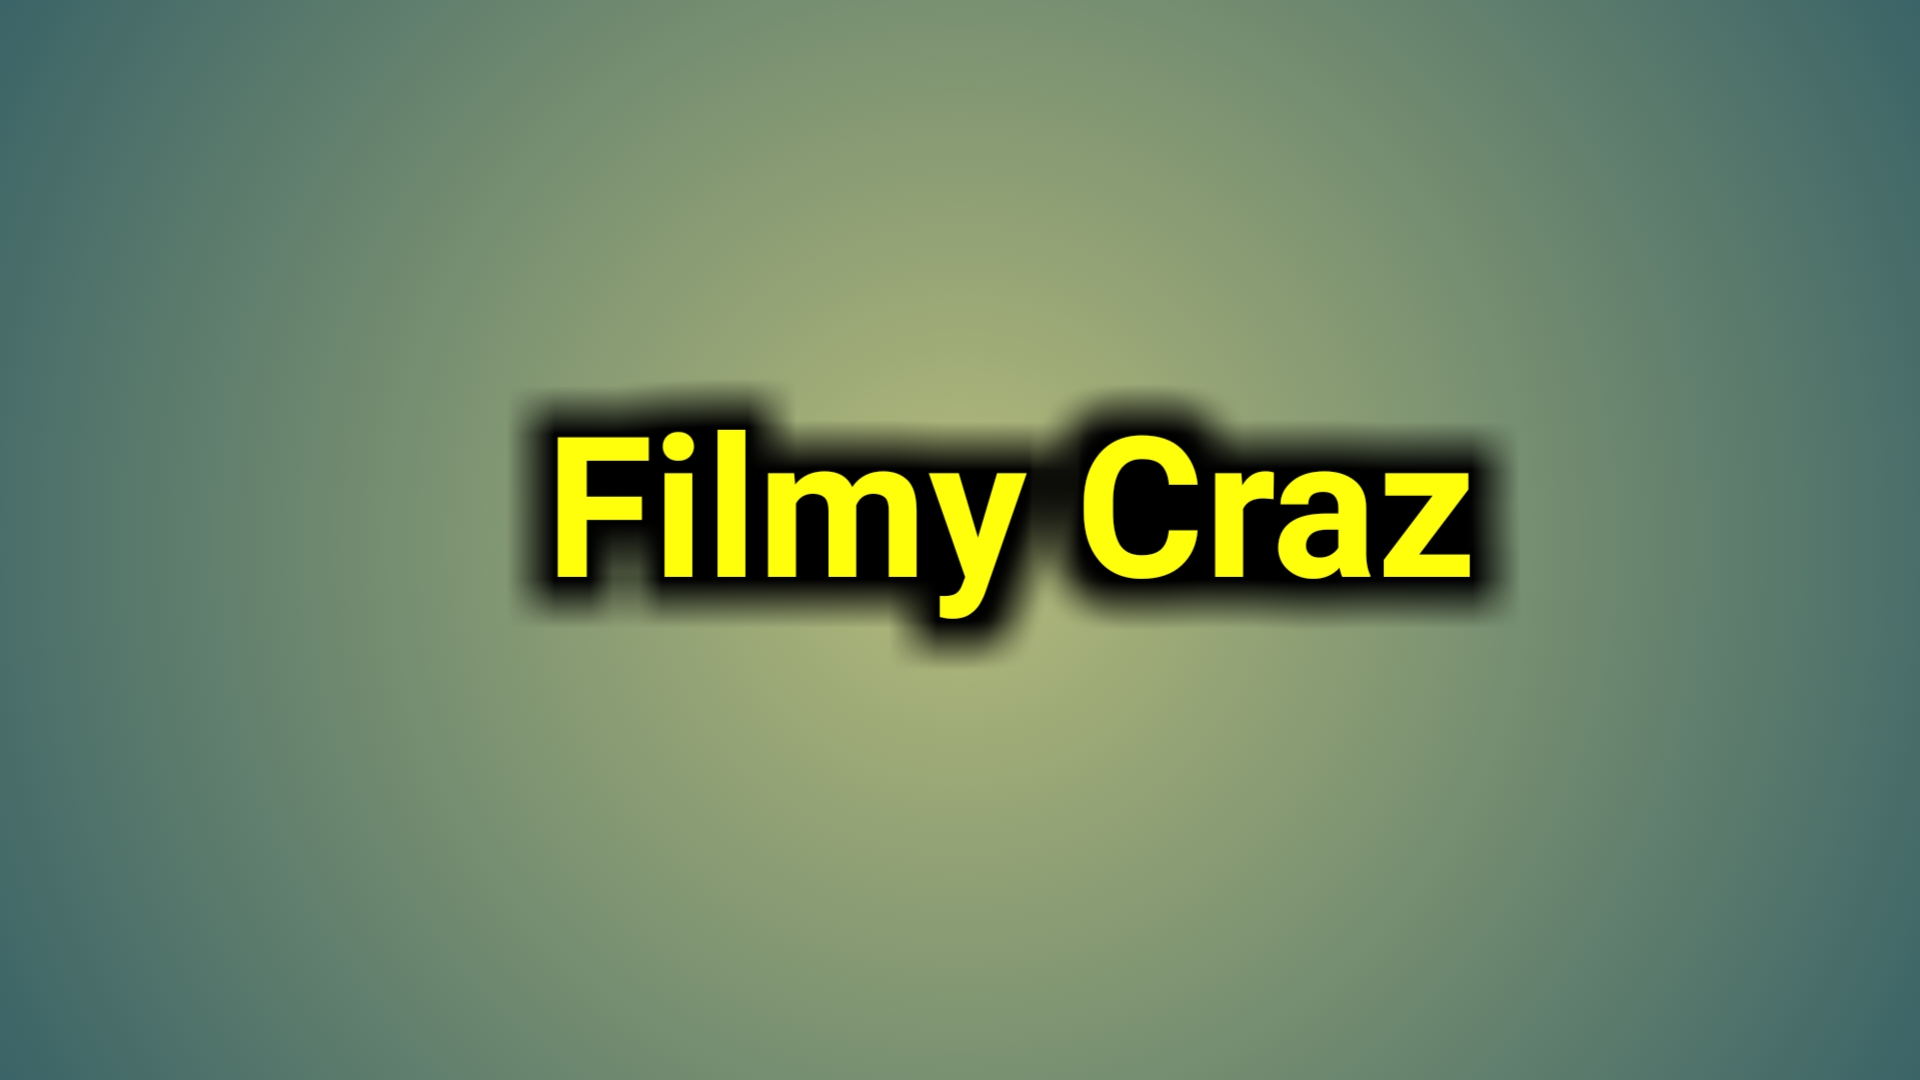 Filmy Craz